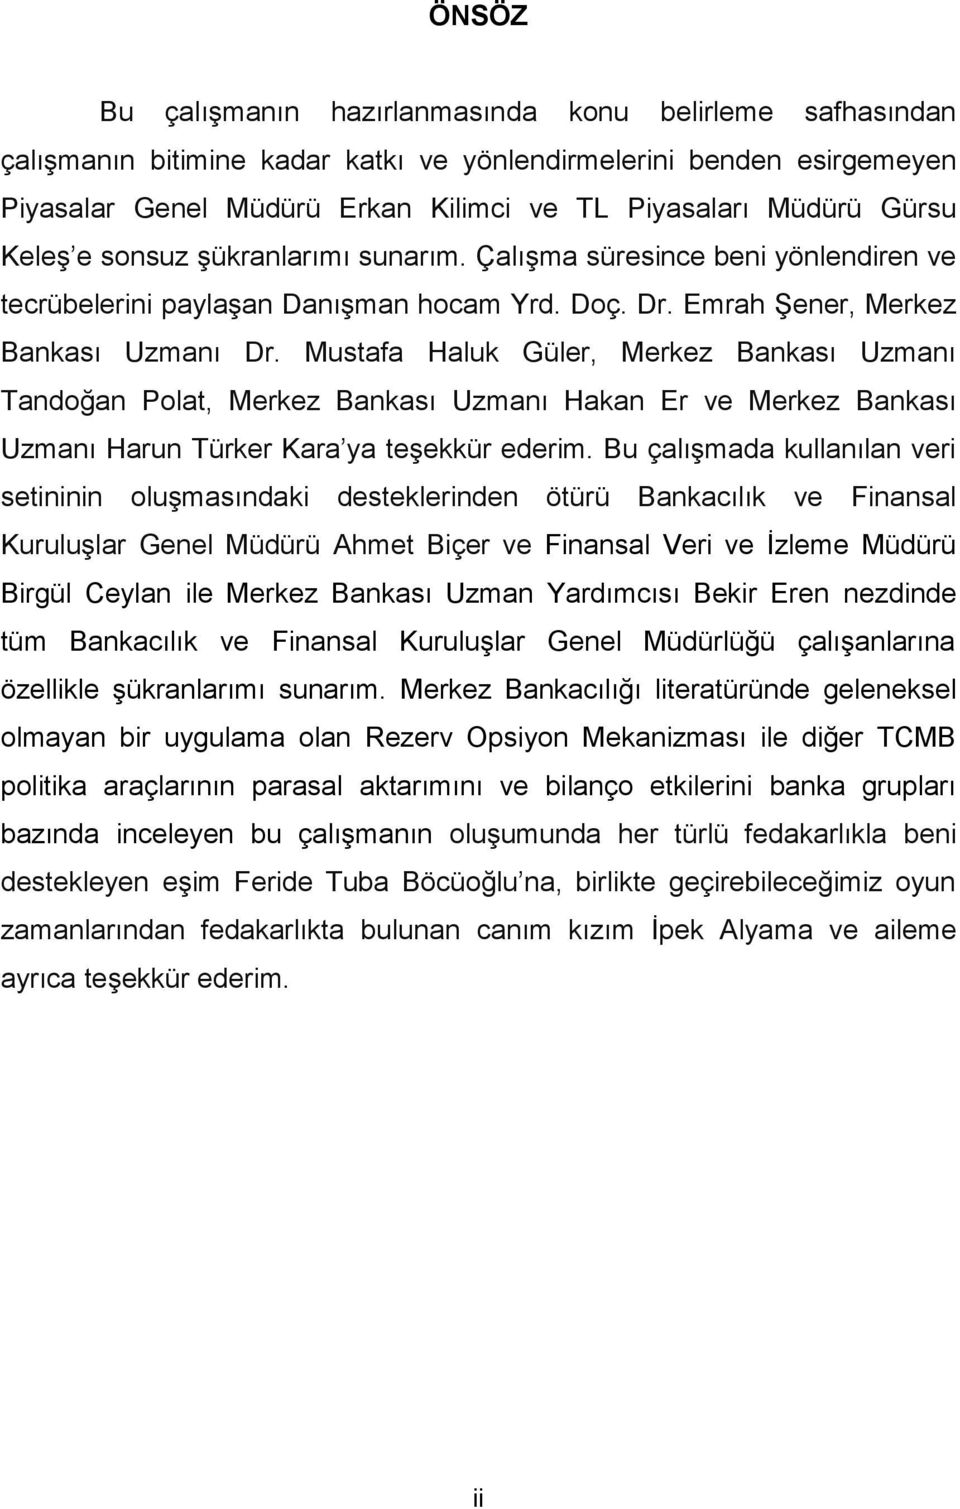 Mutafa Haluk Güler, Merkez Bankaı Uzmanı Tandoğan Polat, Merkez Bankaı Uzmanı Hakan Er ve Merkez Bankaı Uzmanı Harun Türker Kara ya teşekkür ederim.